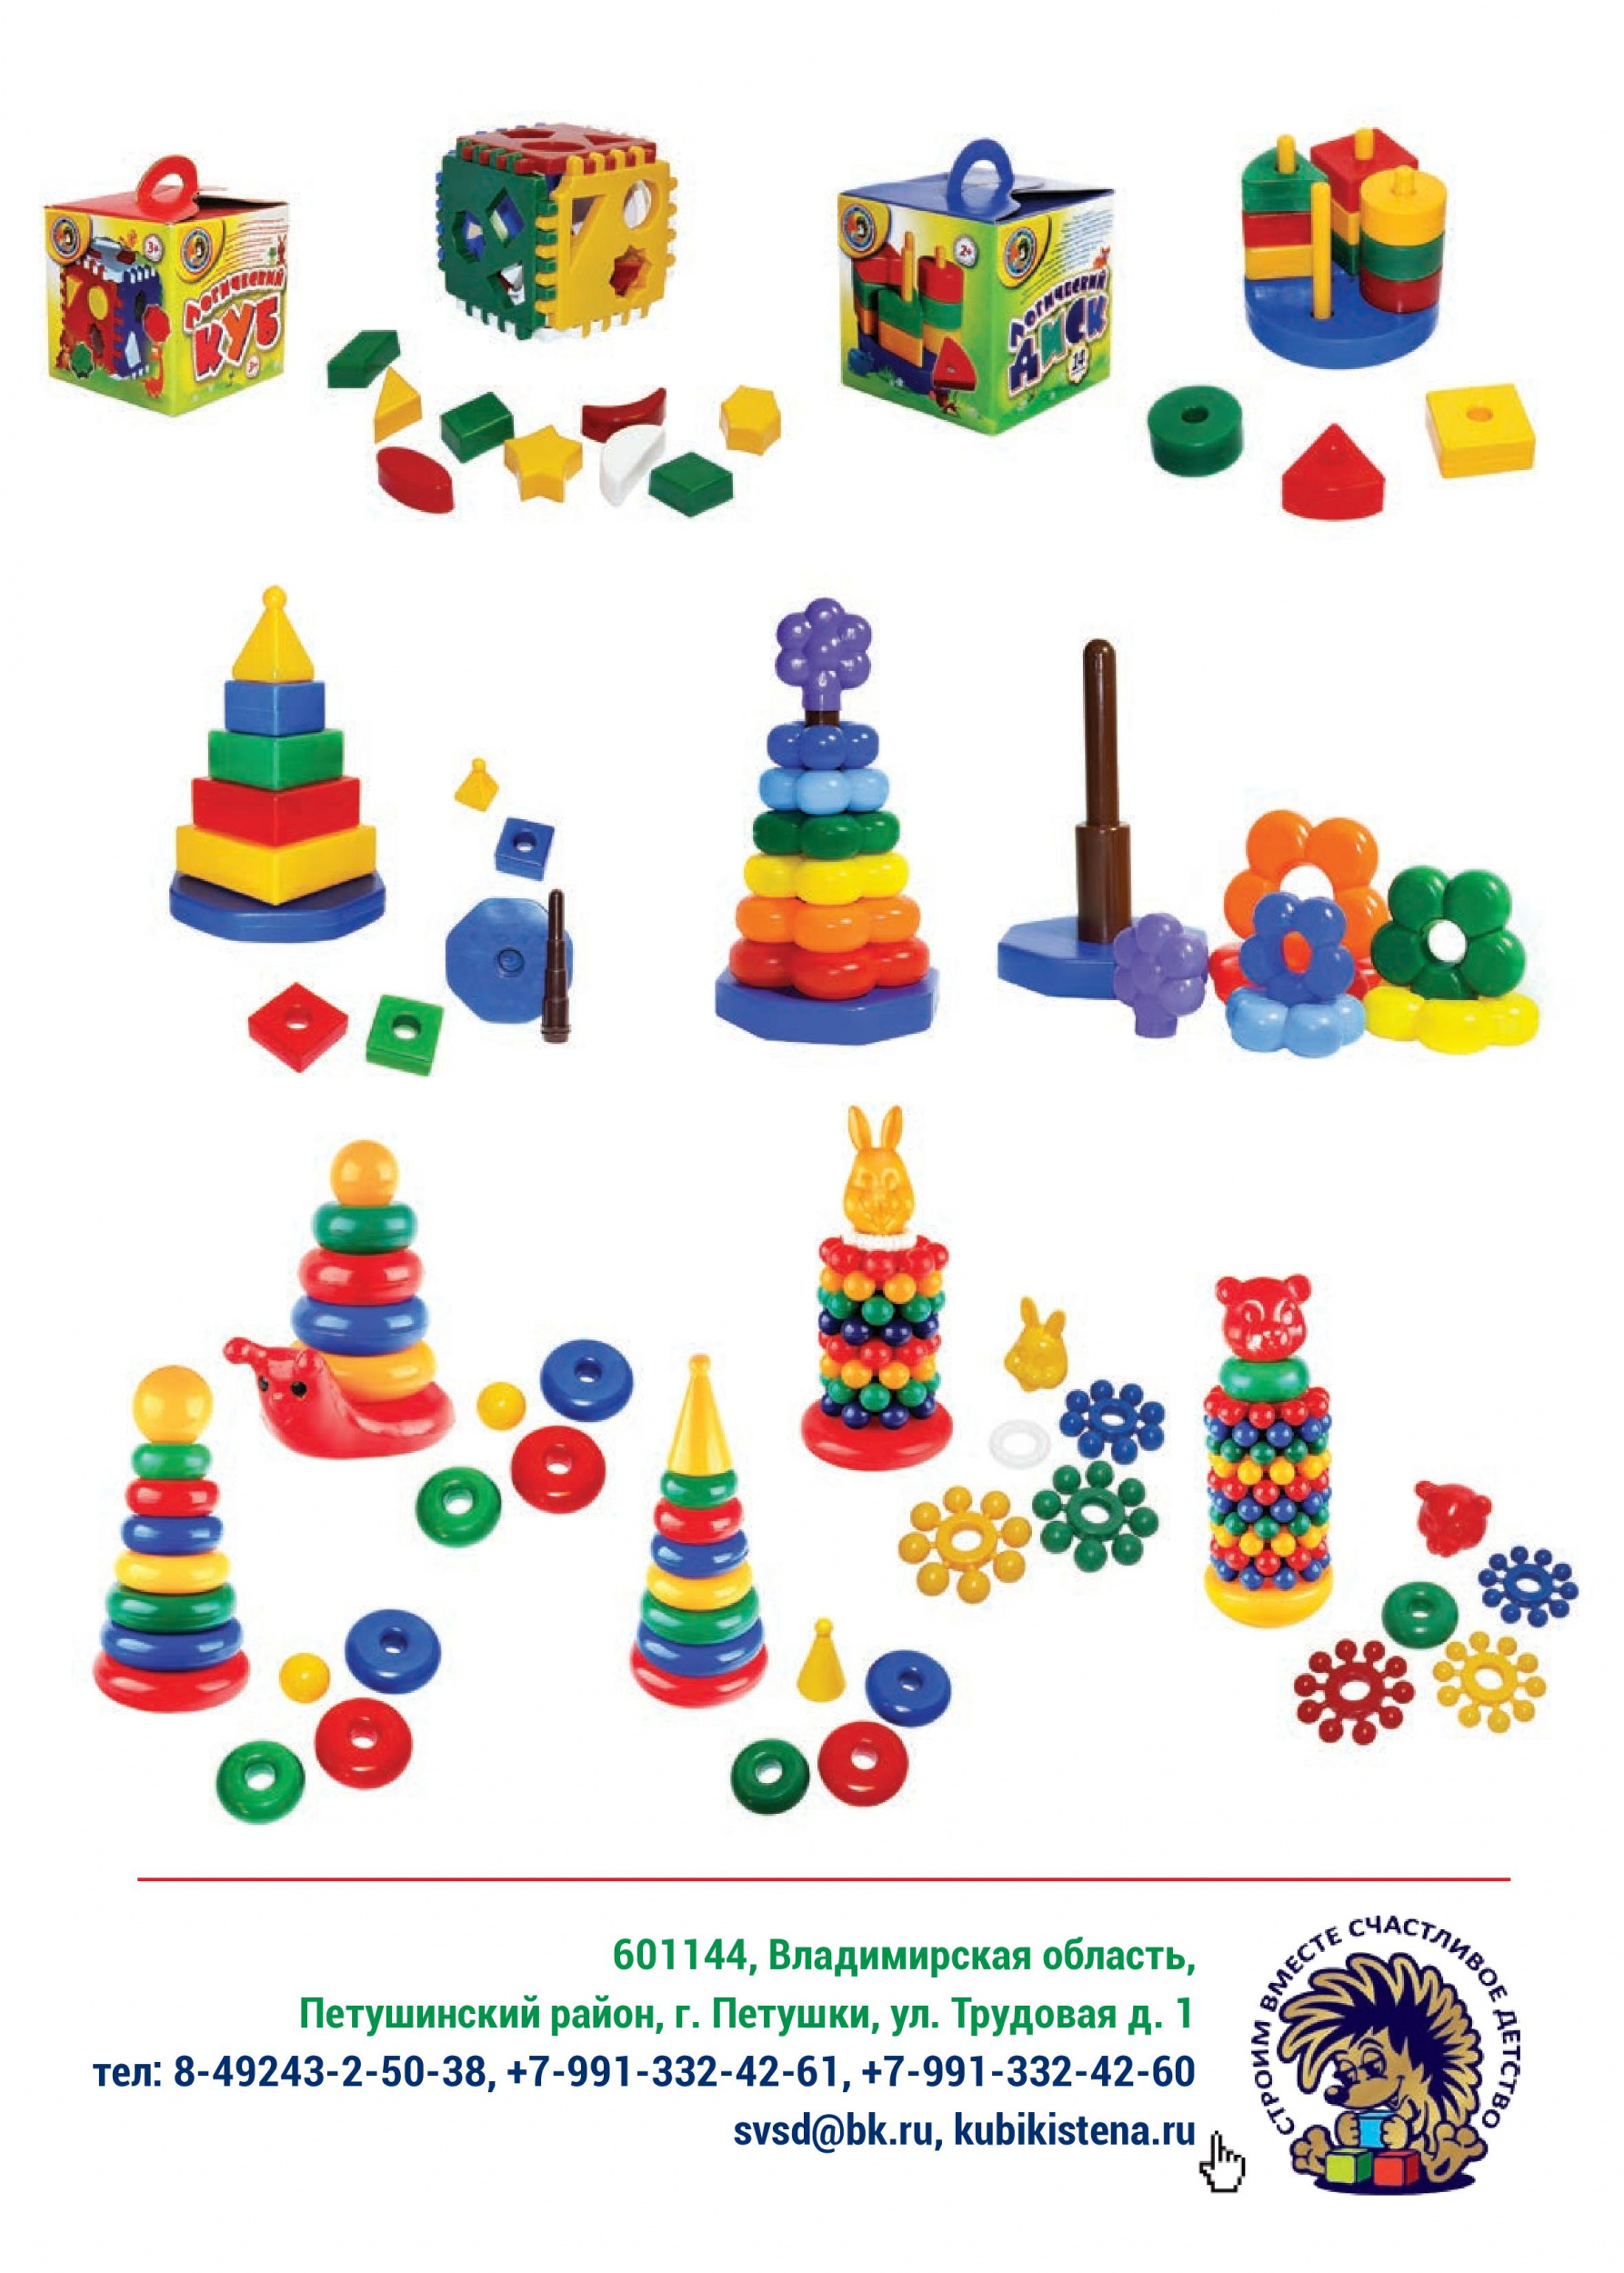 Игрушки от ООО «Строим вместе счастливое детство»